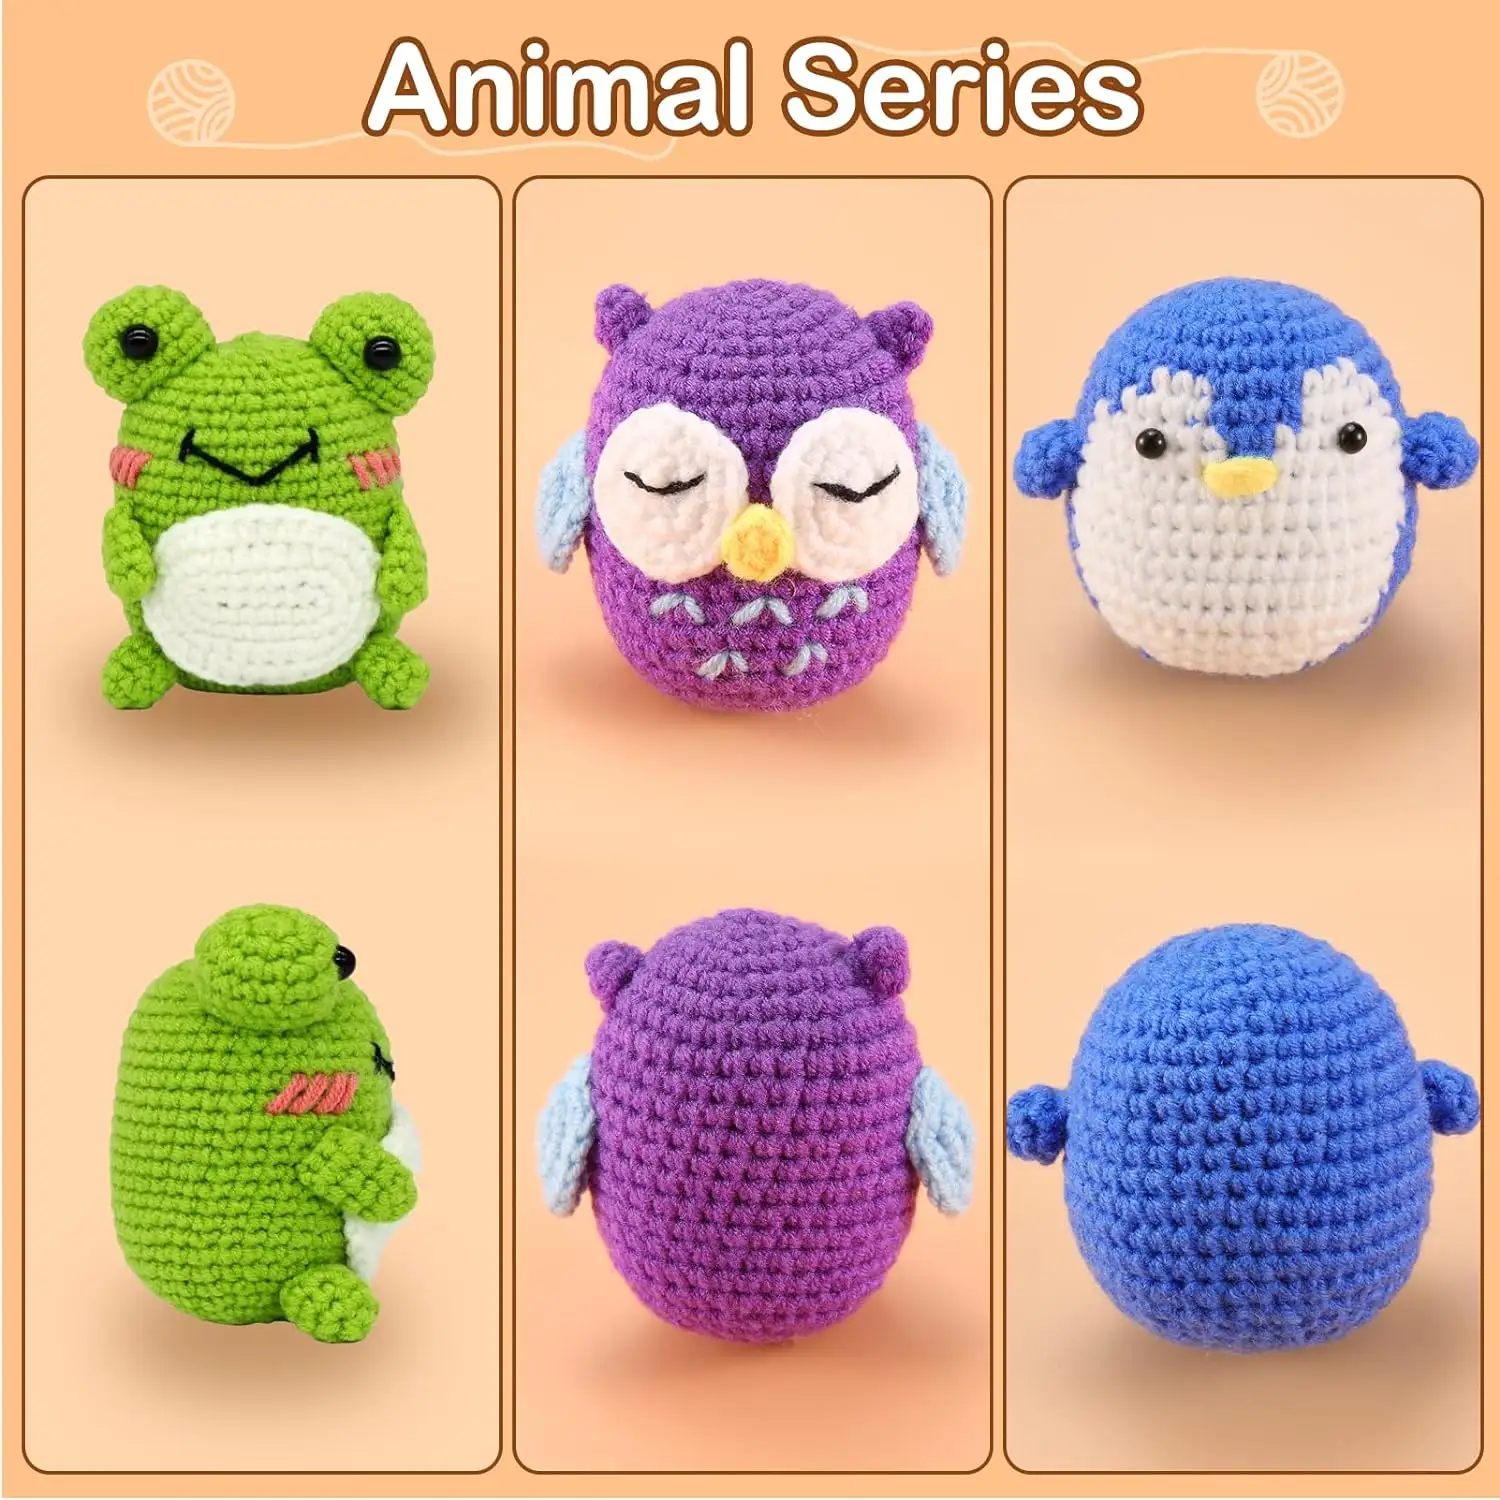 Kit de tricô de crochê DIY personalizado para iniciantes, kit de animais de crochê para crianças e adultos iniciantes com vídeo passo a passo